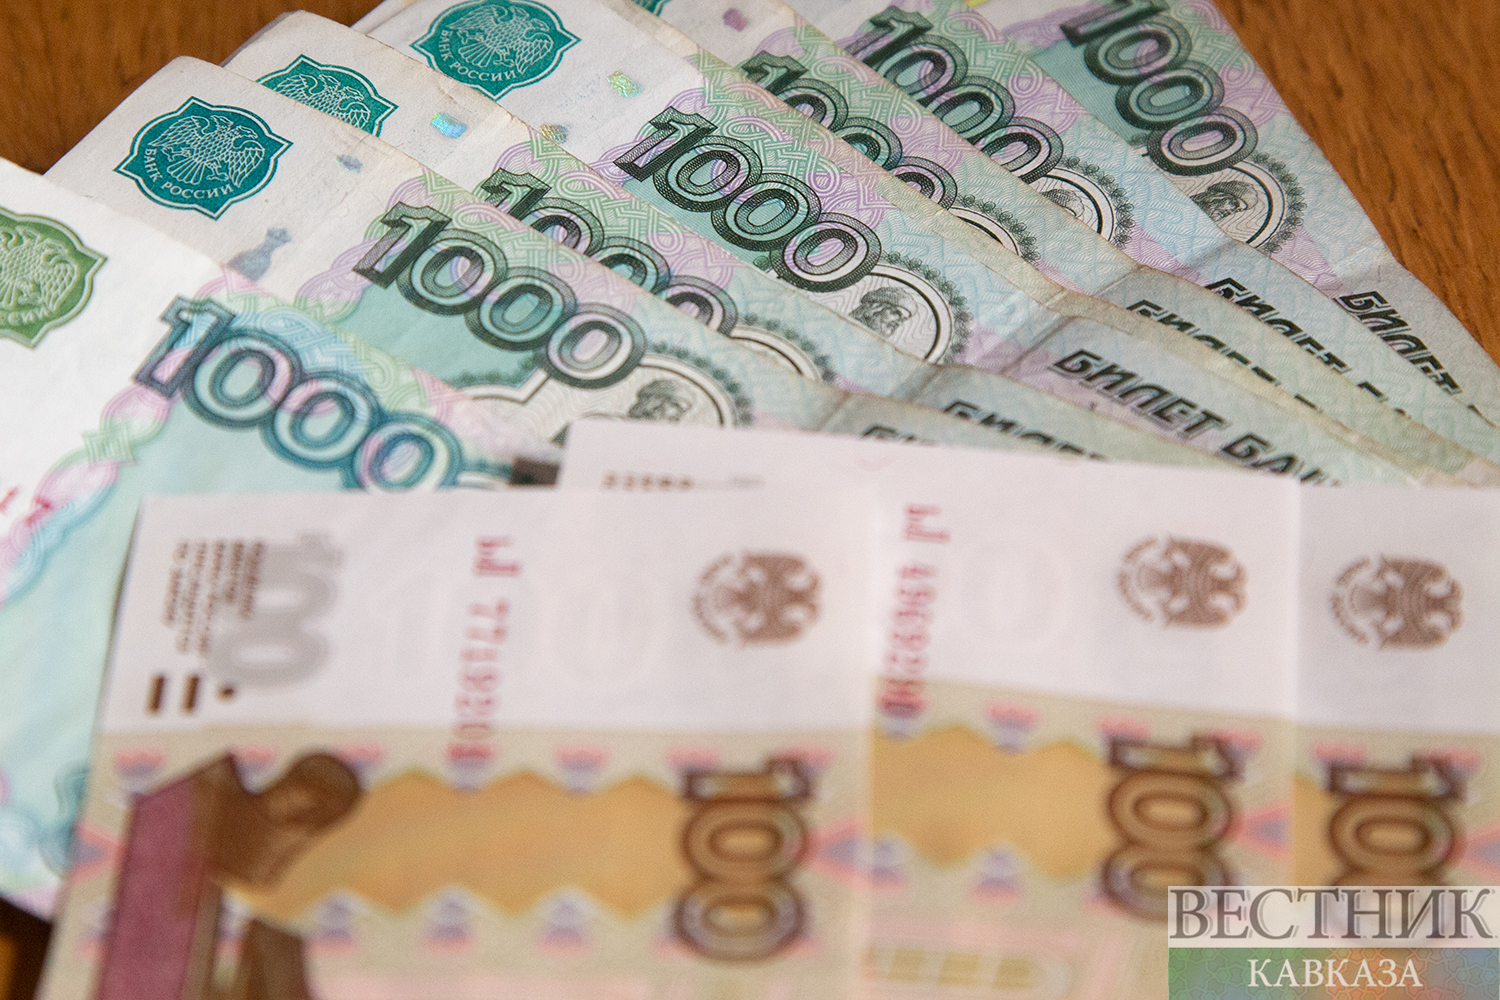 Банкноты России